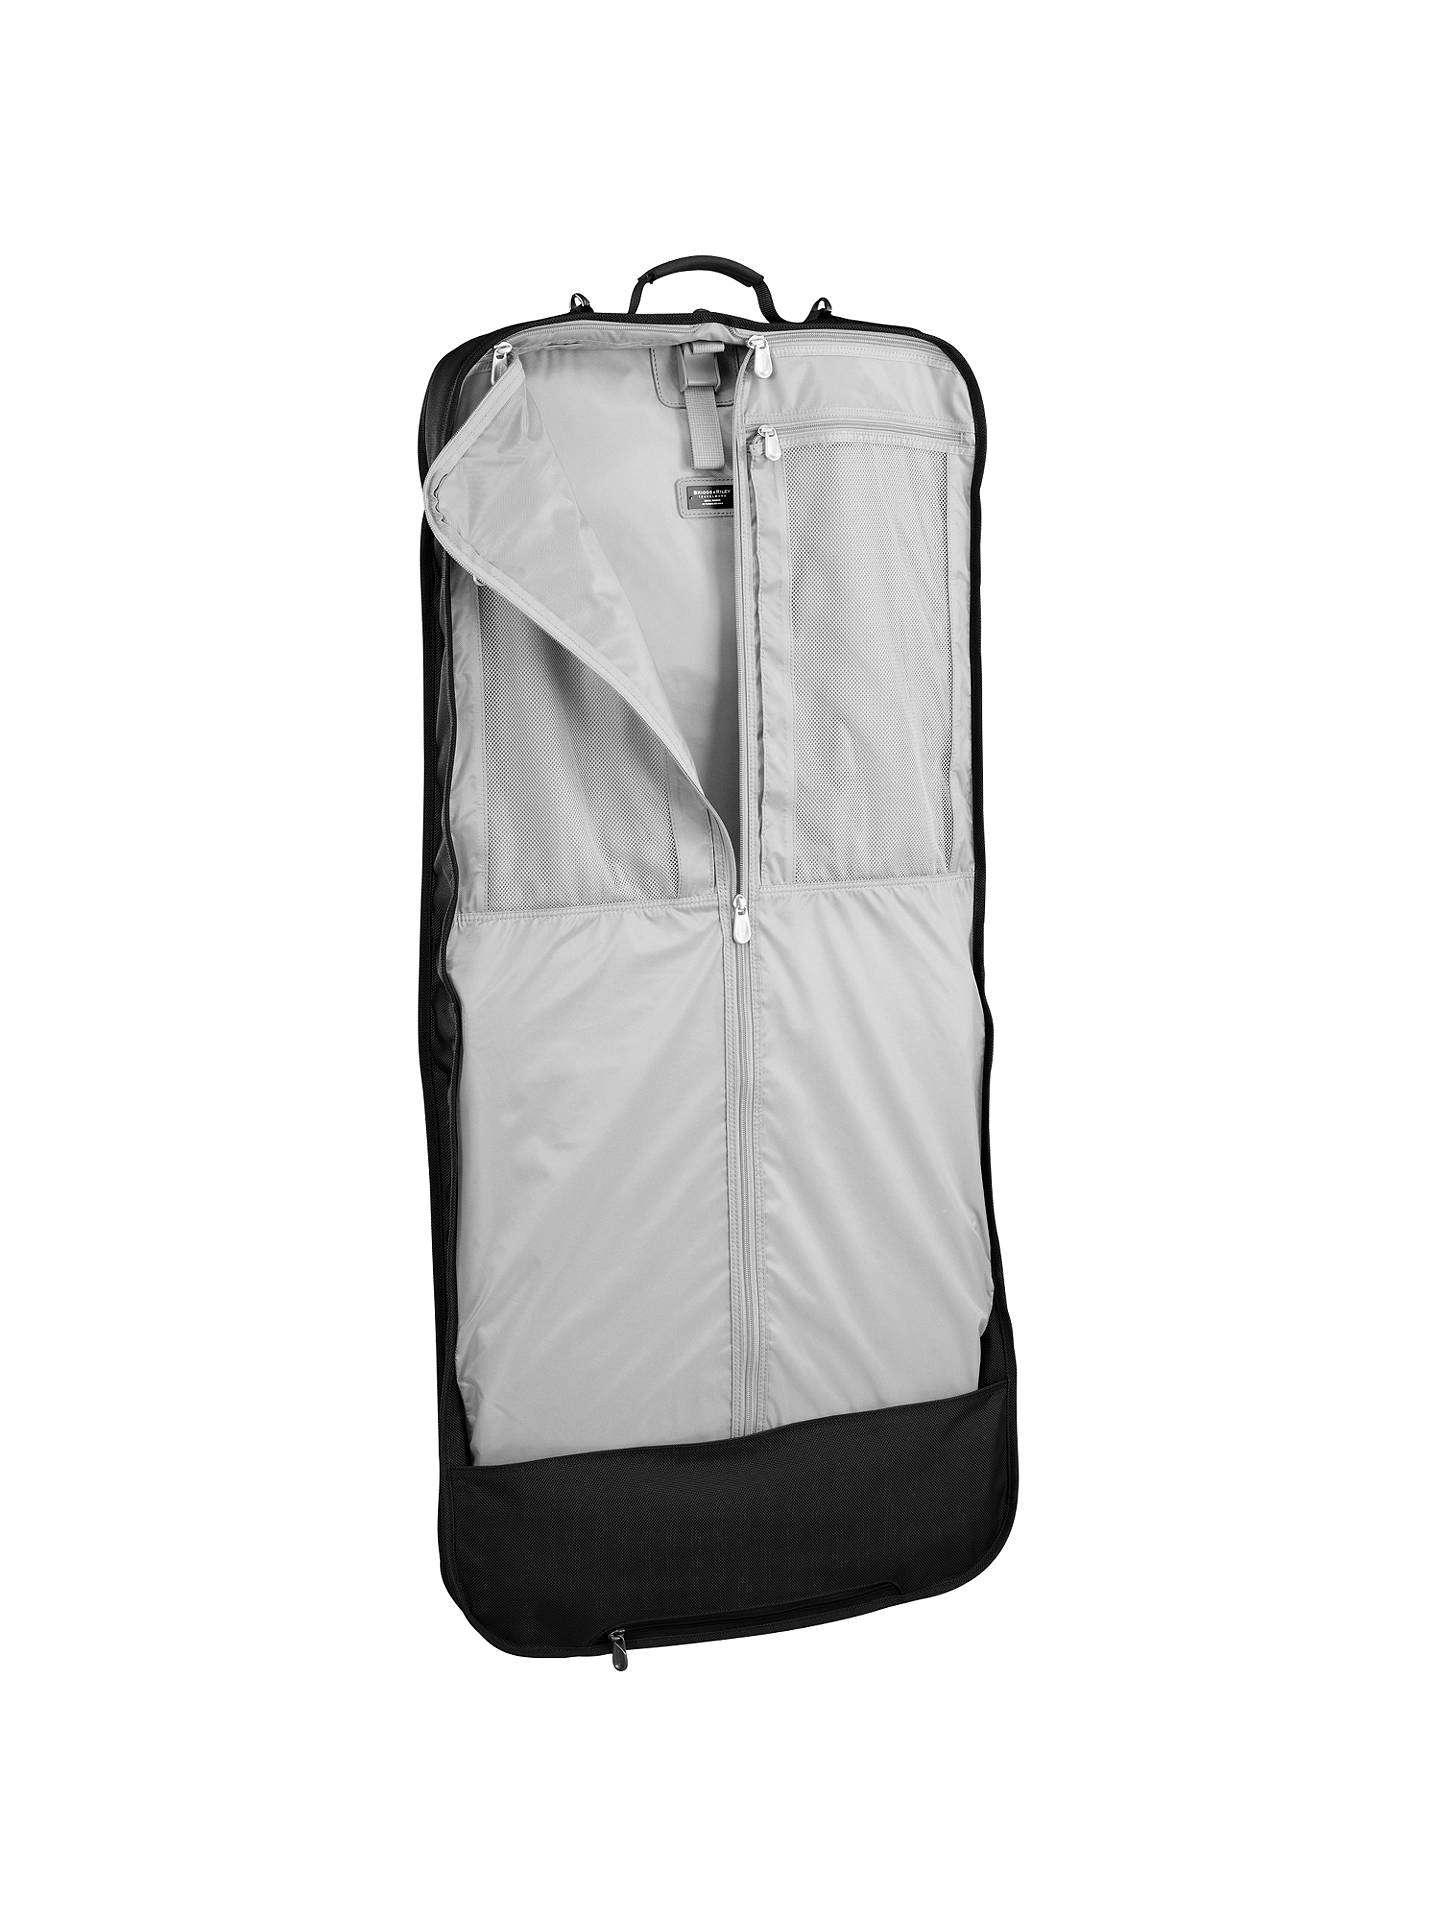 2 Hugo Boss Designer Suit Cover Garment Travel Carrier Bags